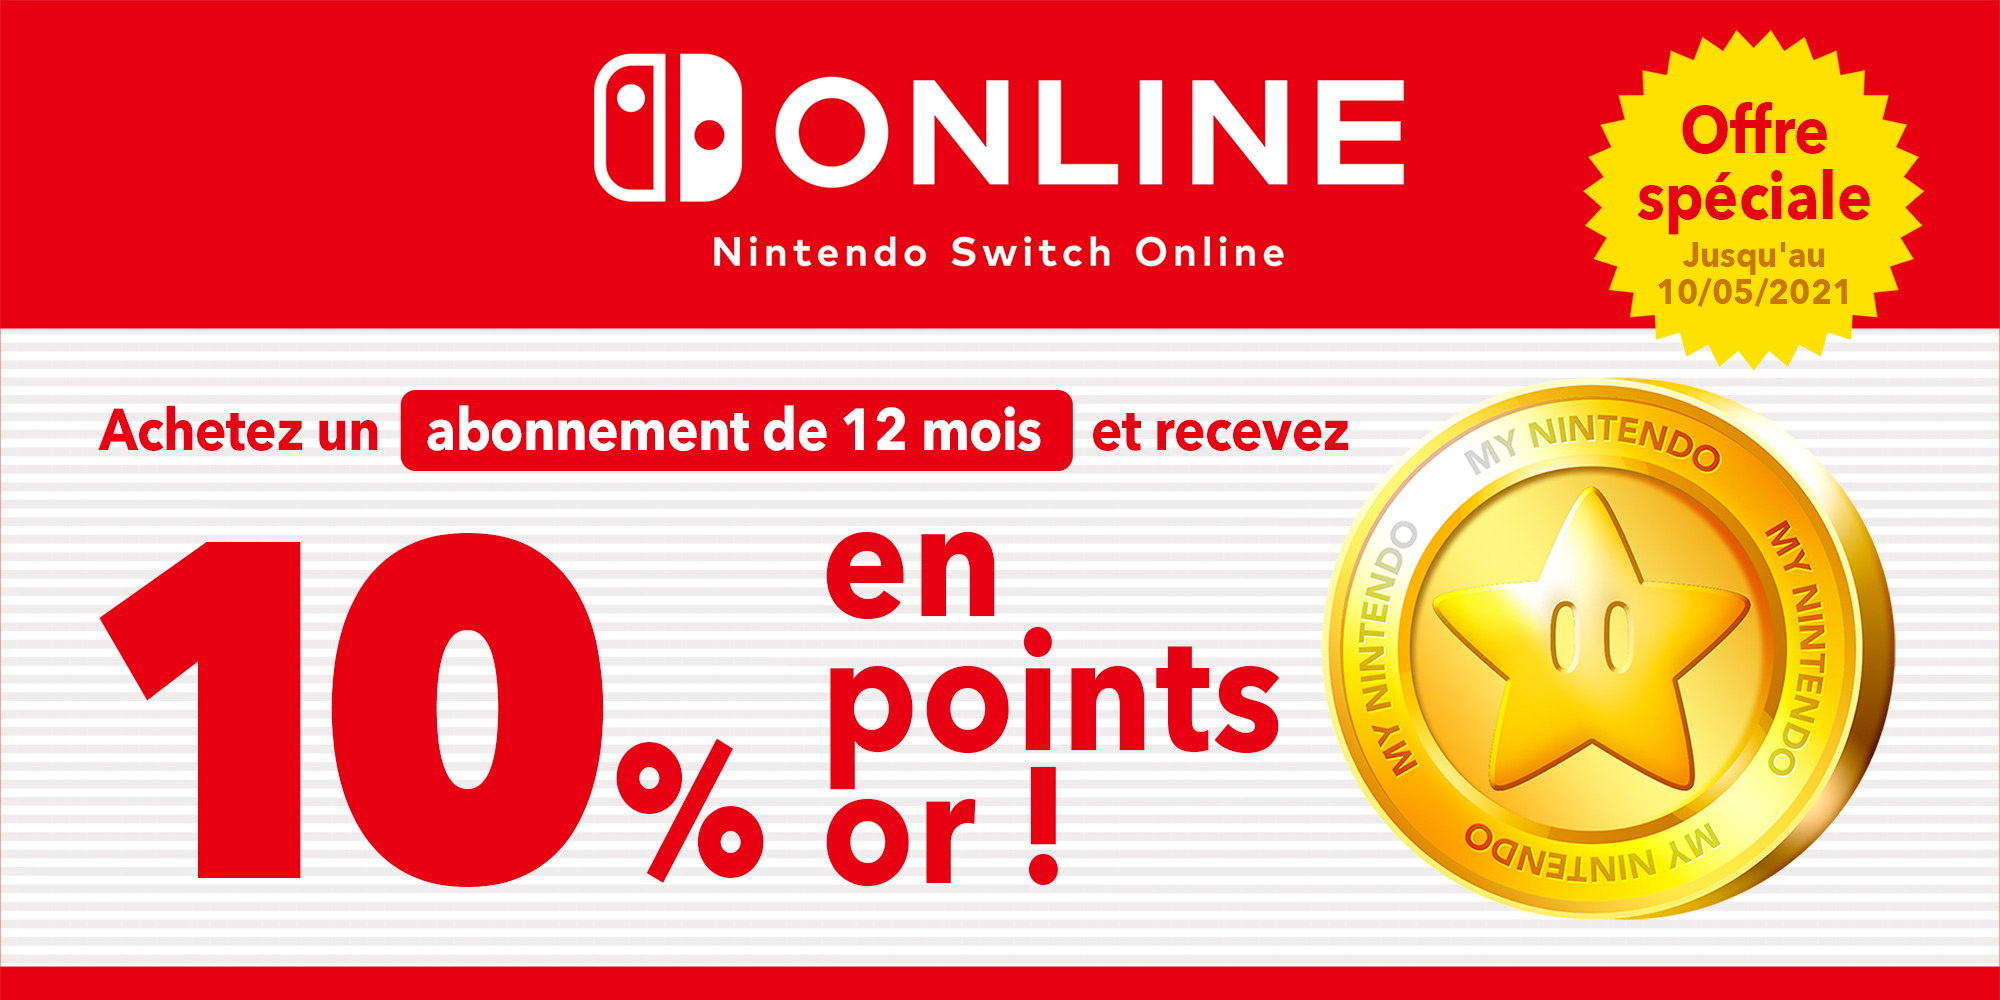 Offre spéciale : obtenez jusqu'à 3,50 € en points or en vous abonnant pour 12 mois au service Nintendo Switch Online !